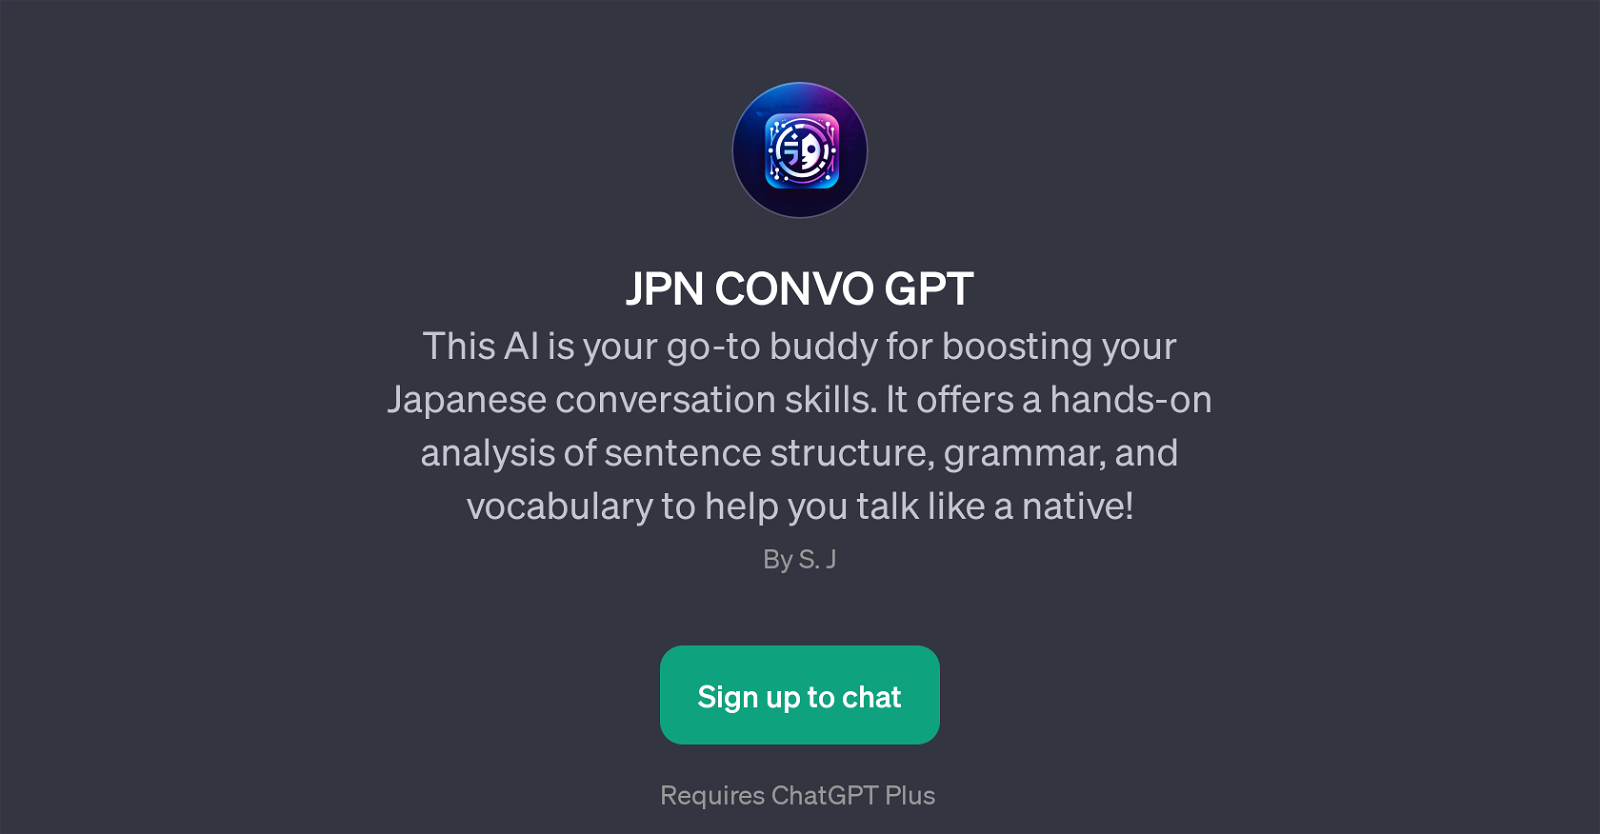 JPN CONVO GPT website